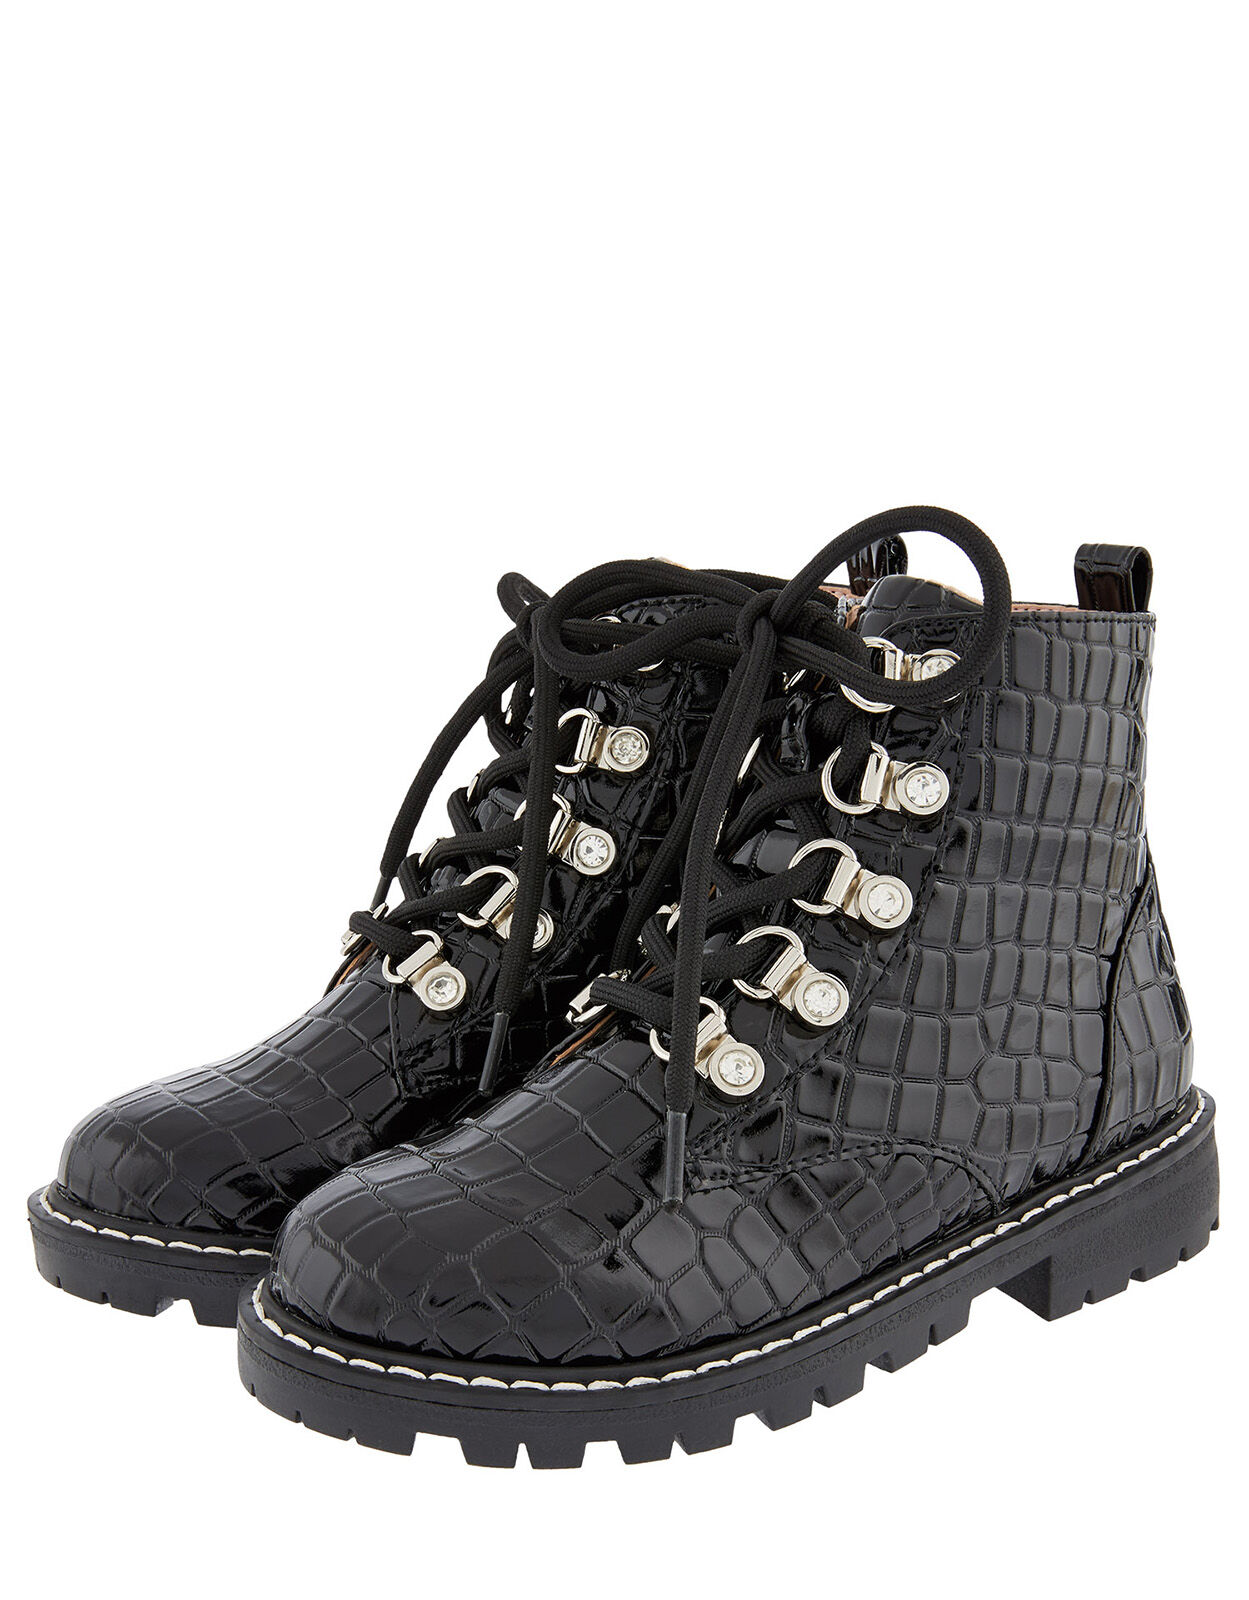 patent croc lace up boots